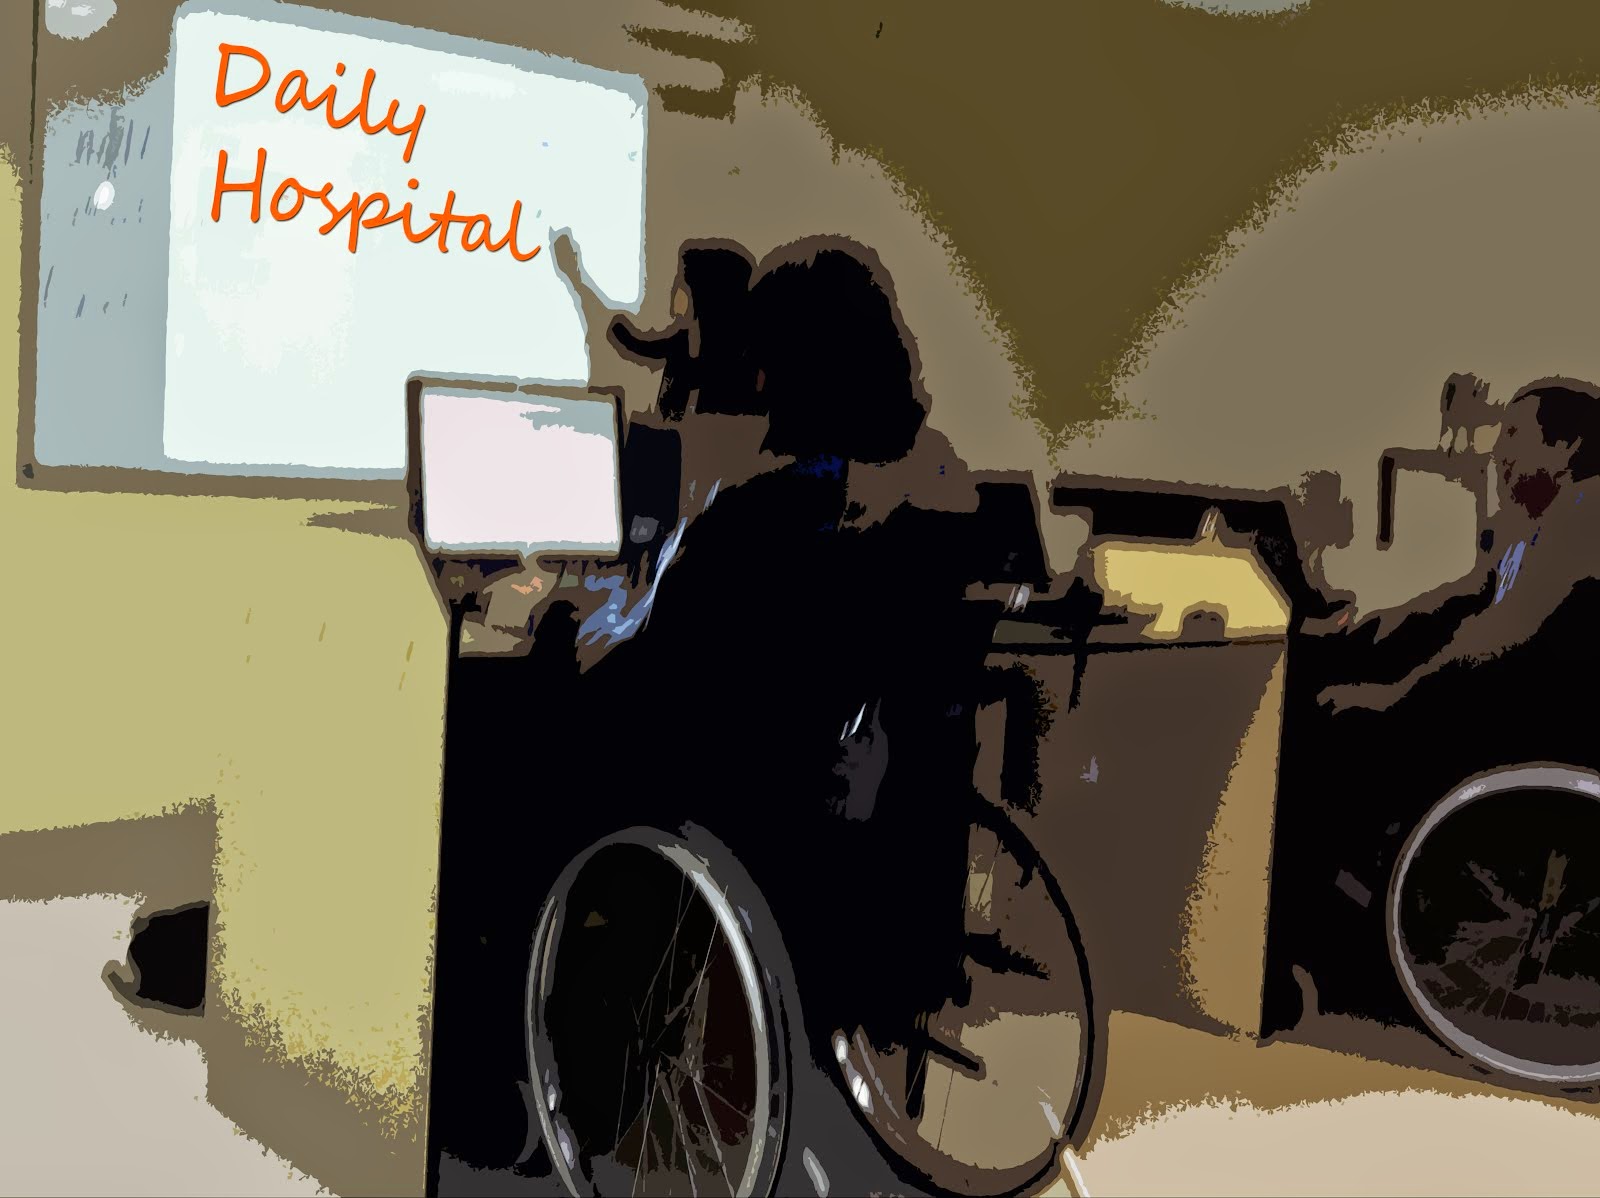 Daily Hospital